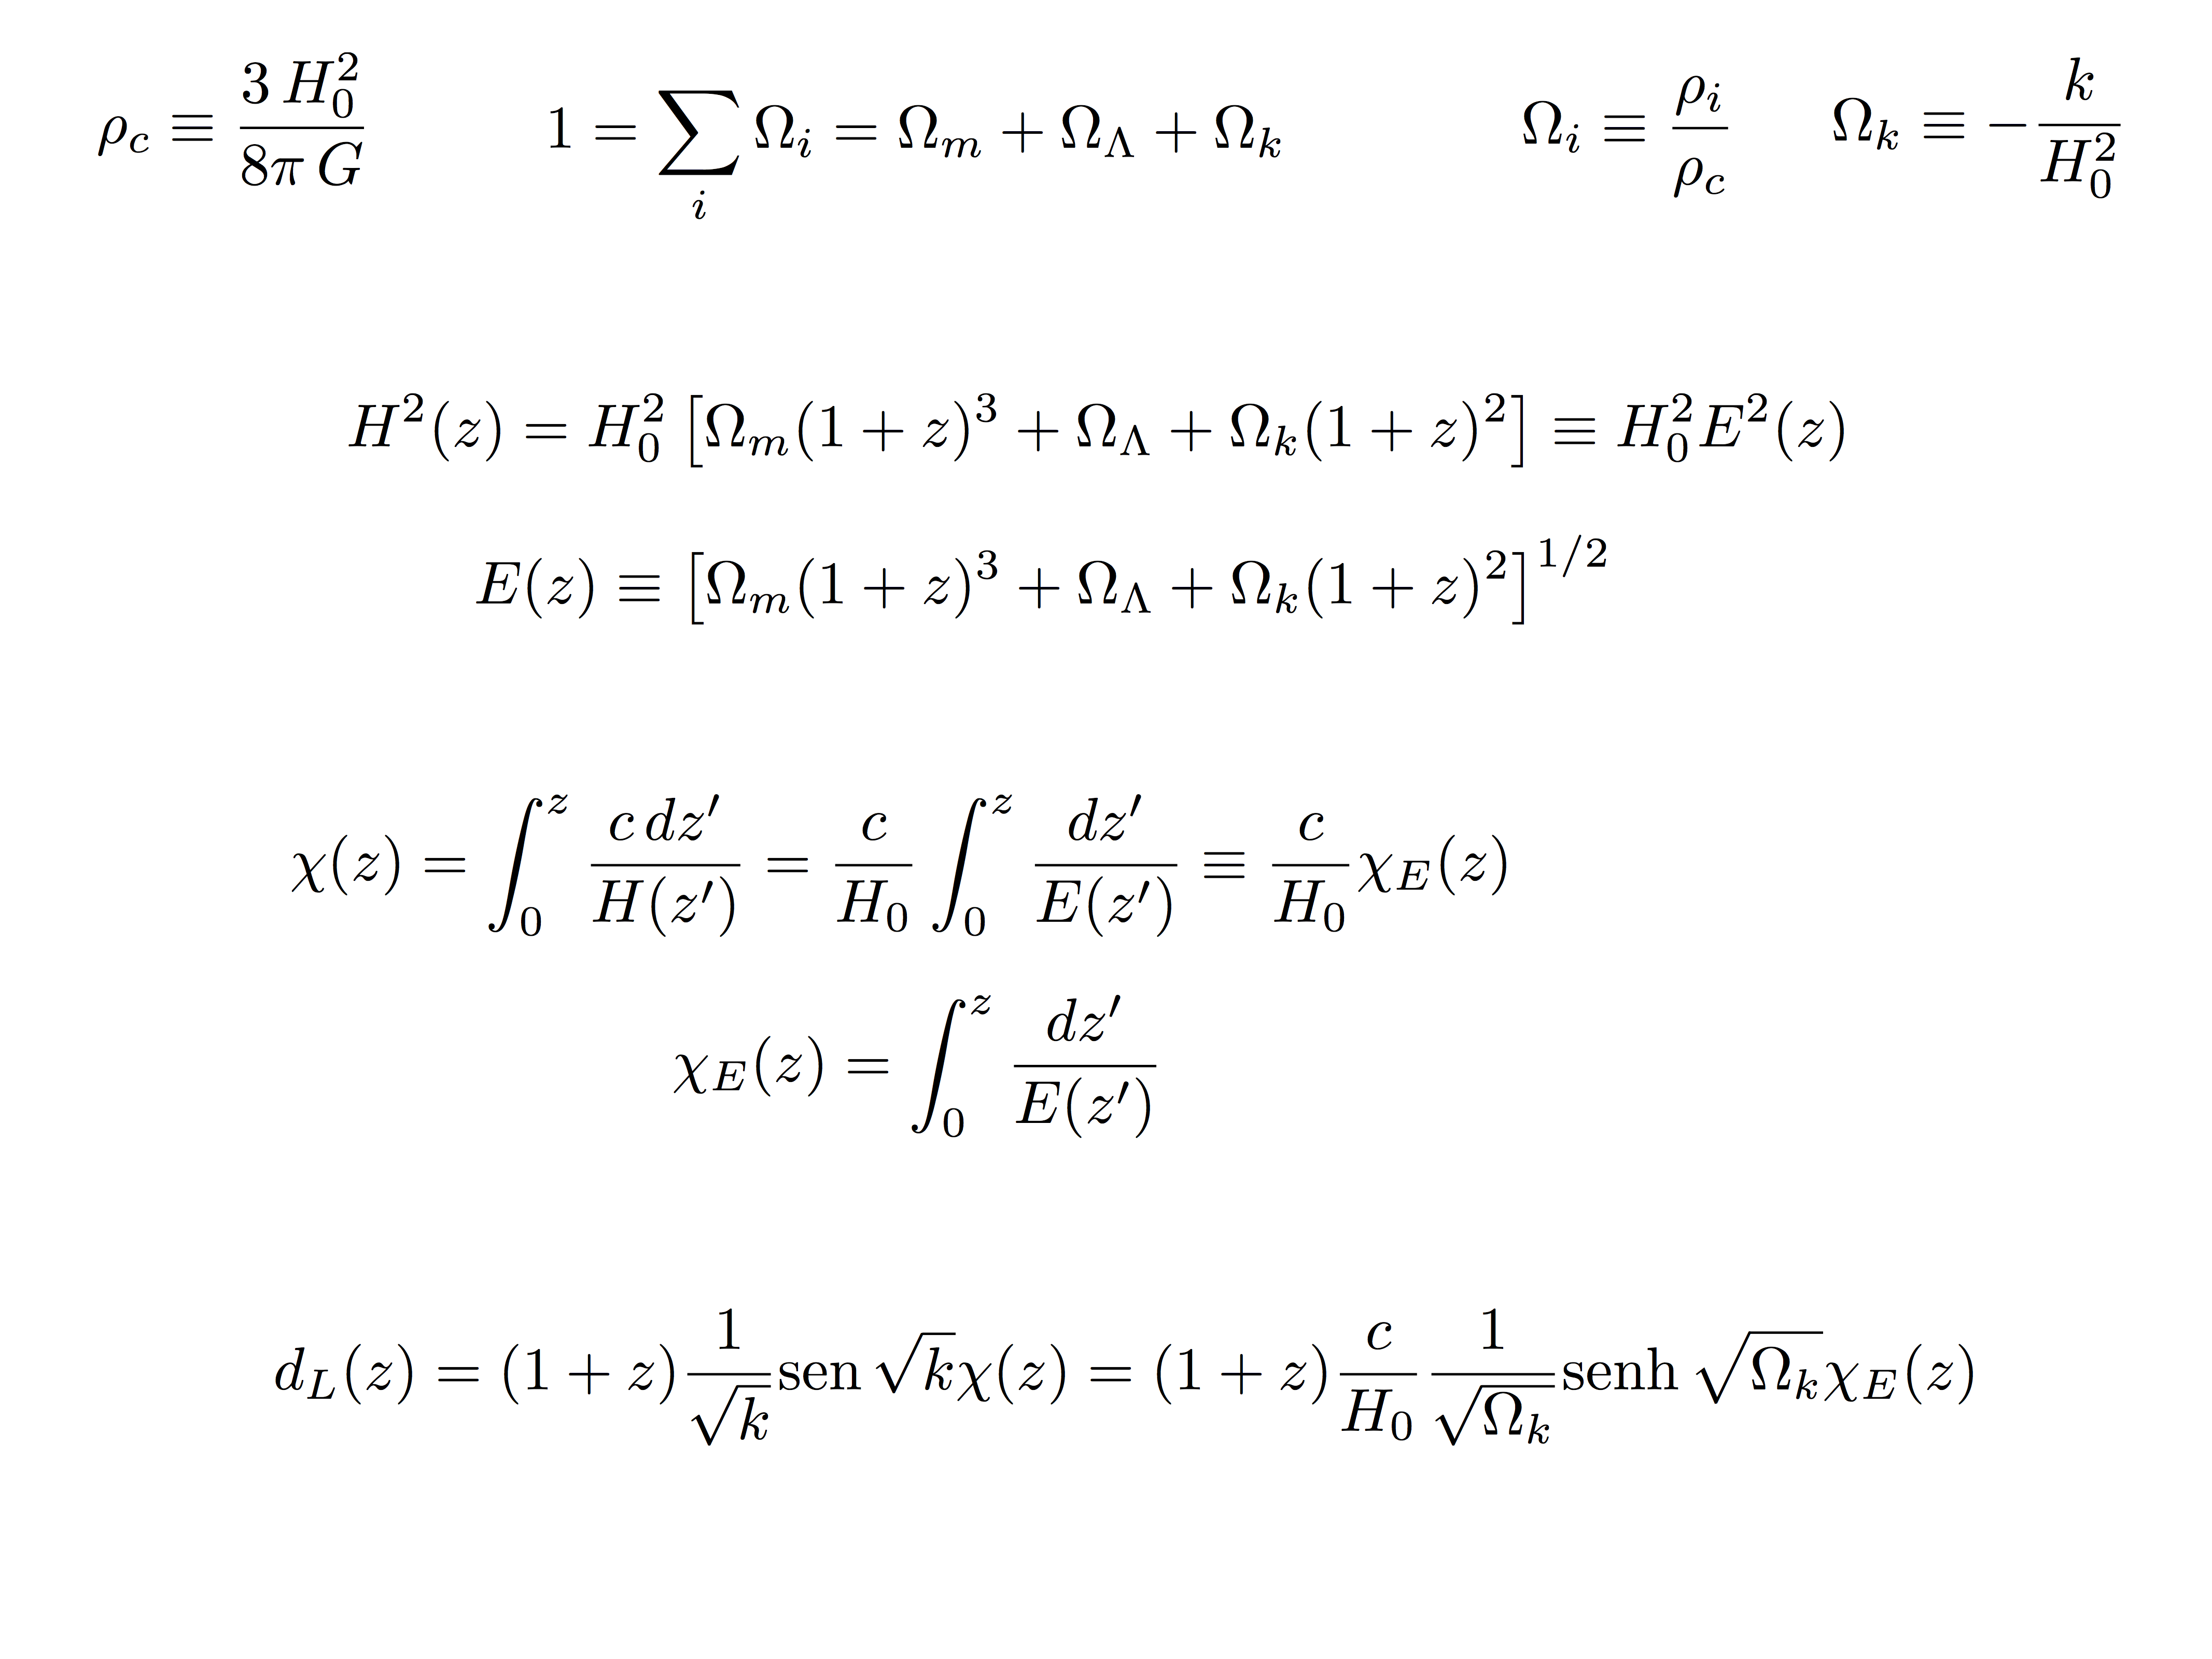 Equação de Friedman simplificada